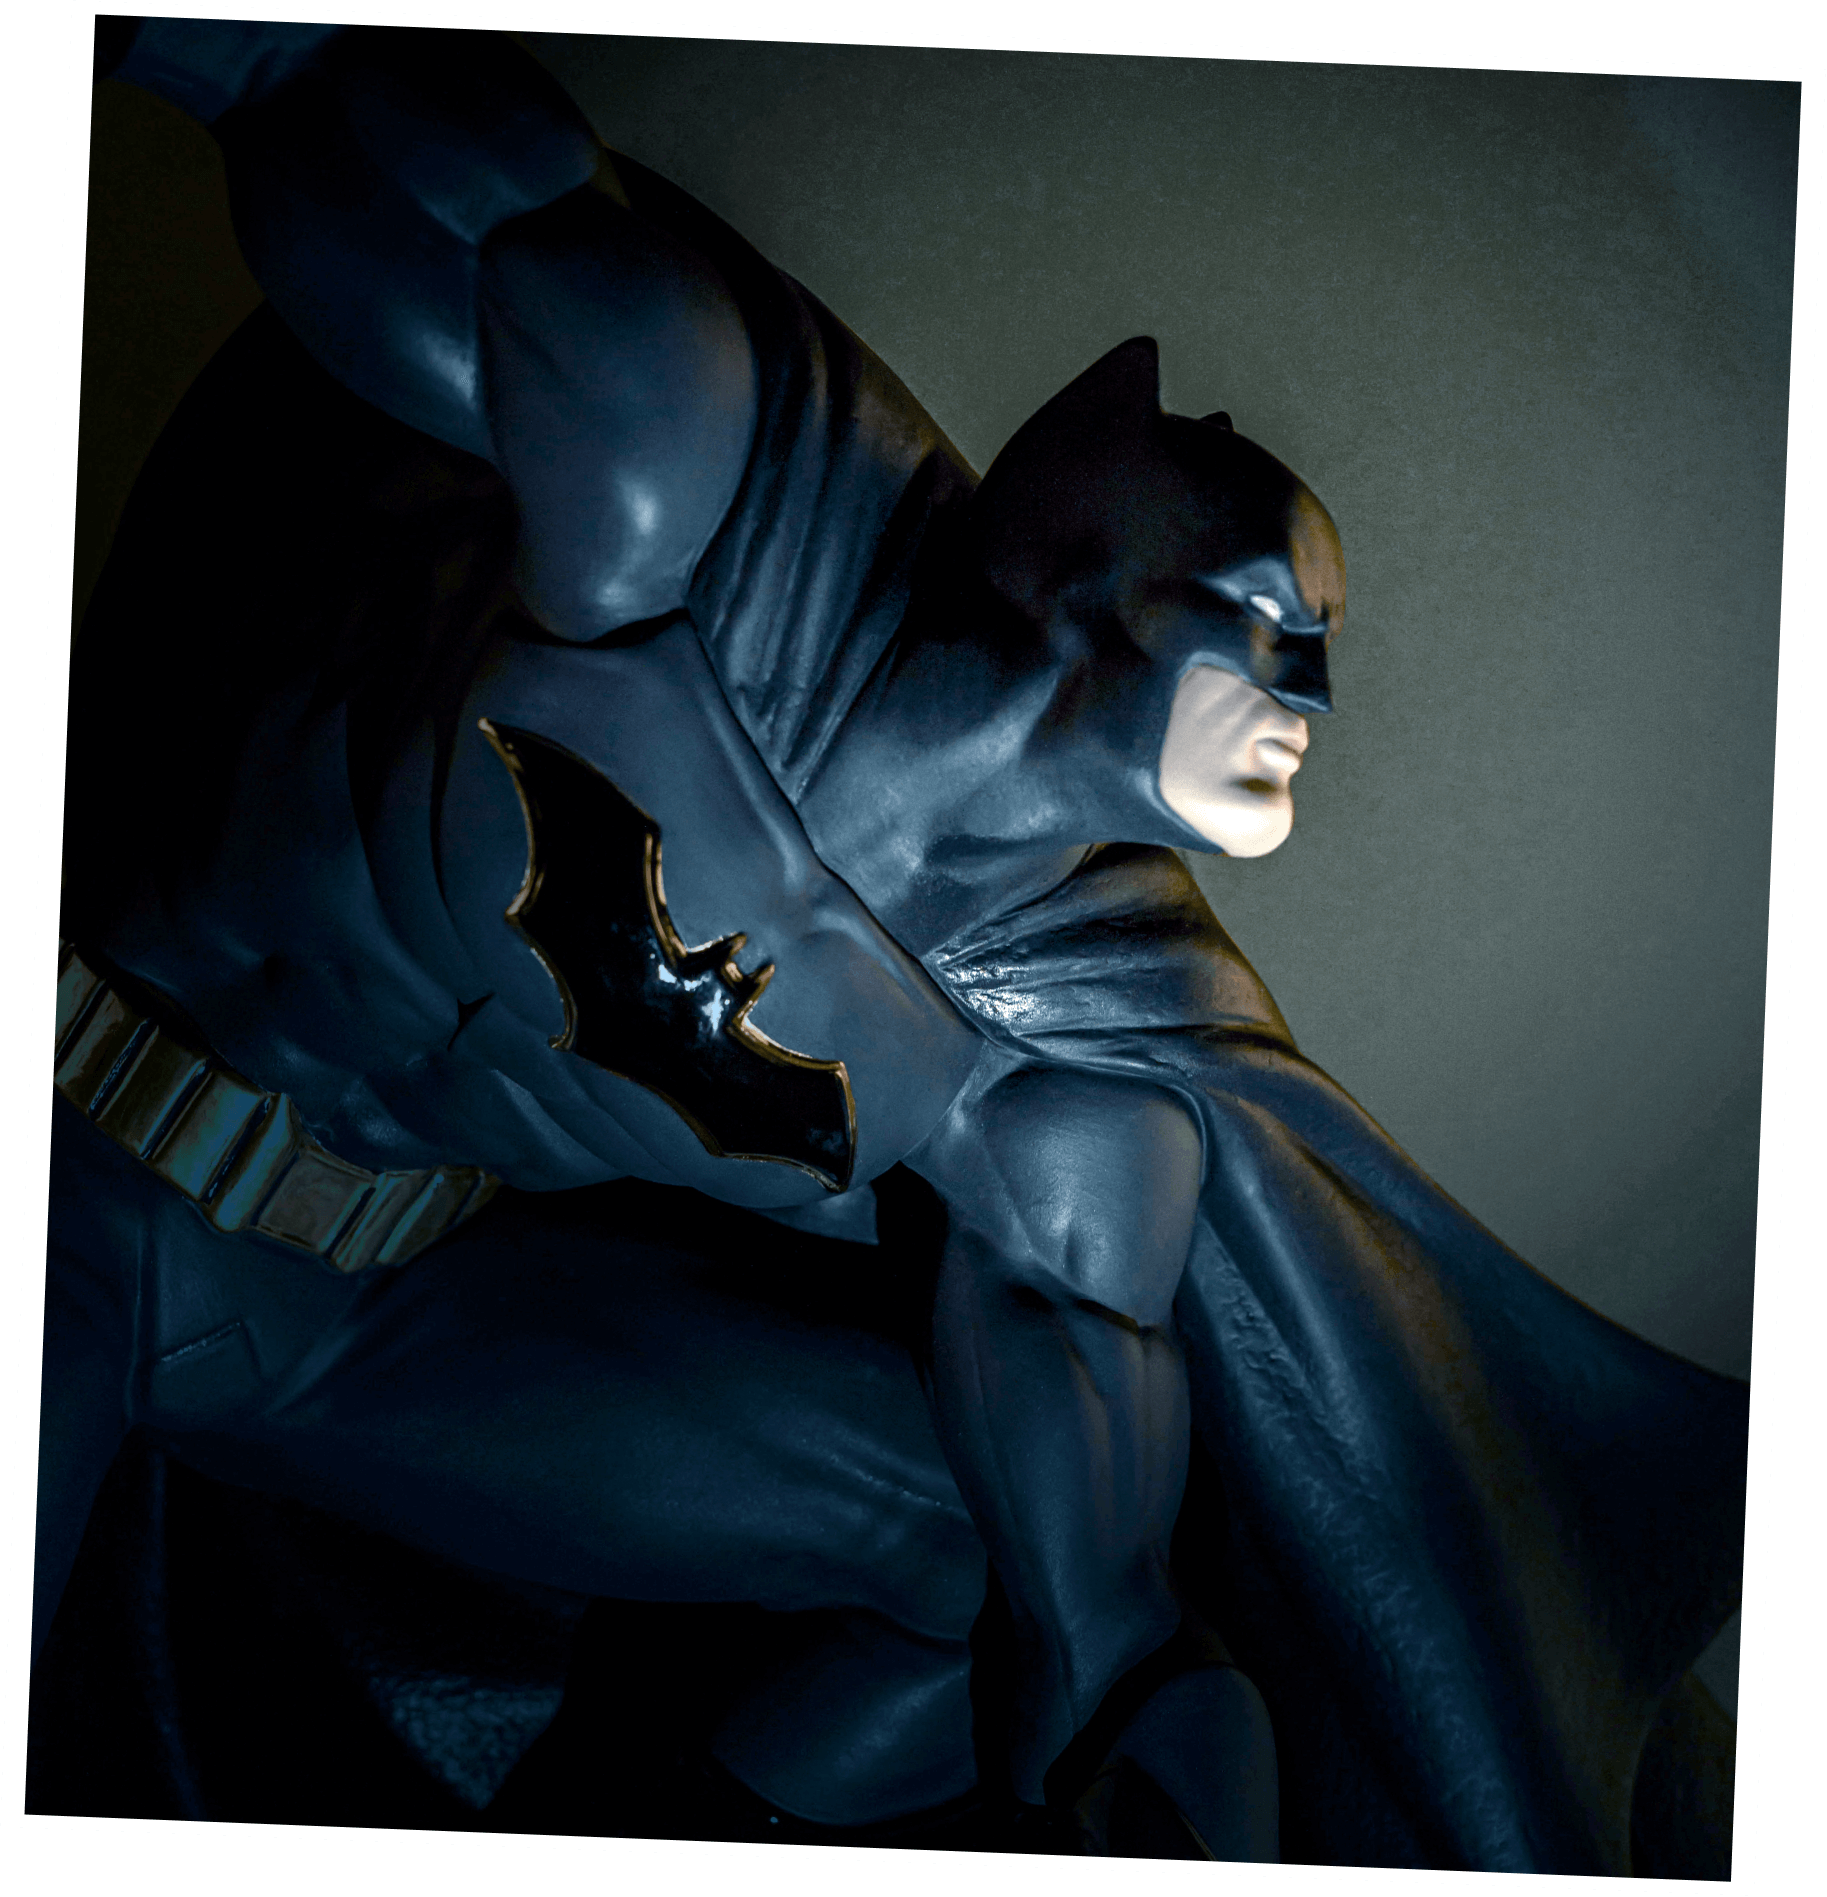 Escultura de Batman en una habitación oscura